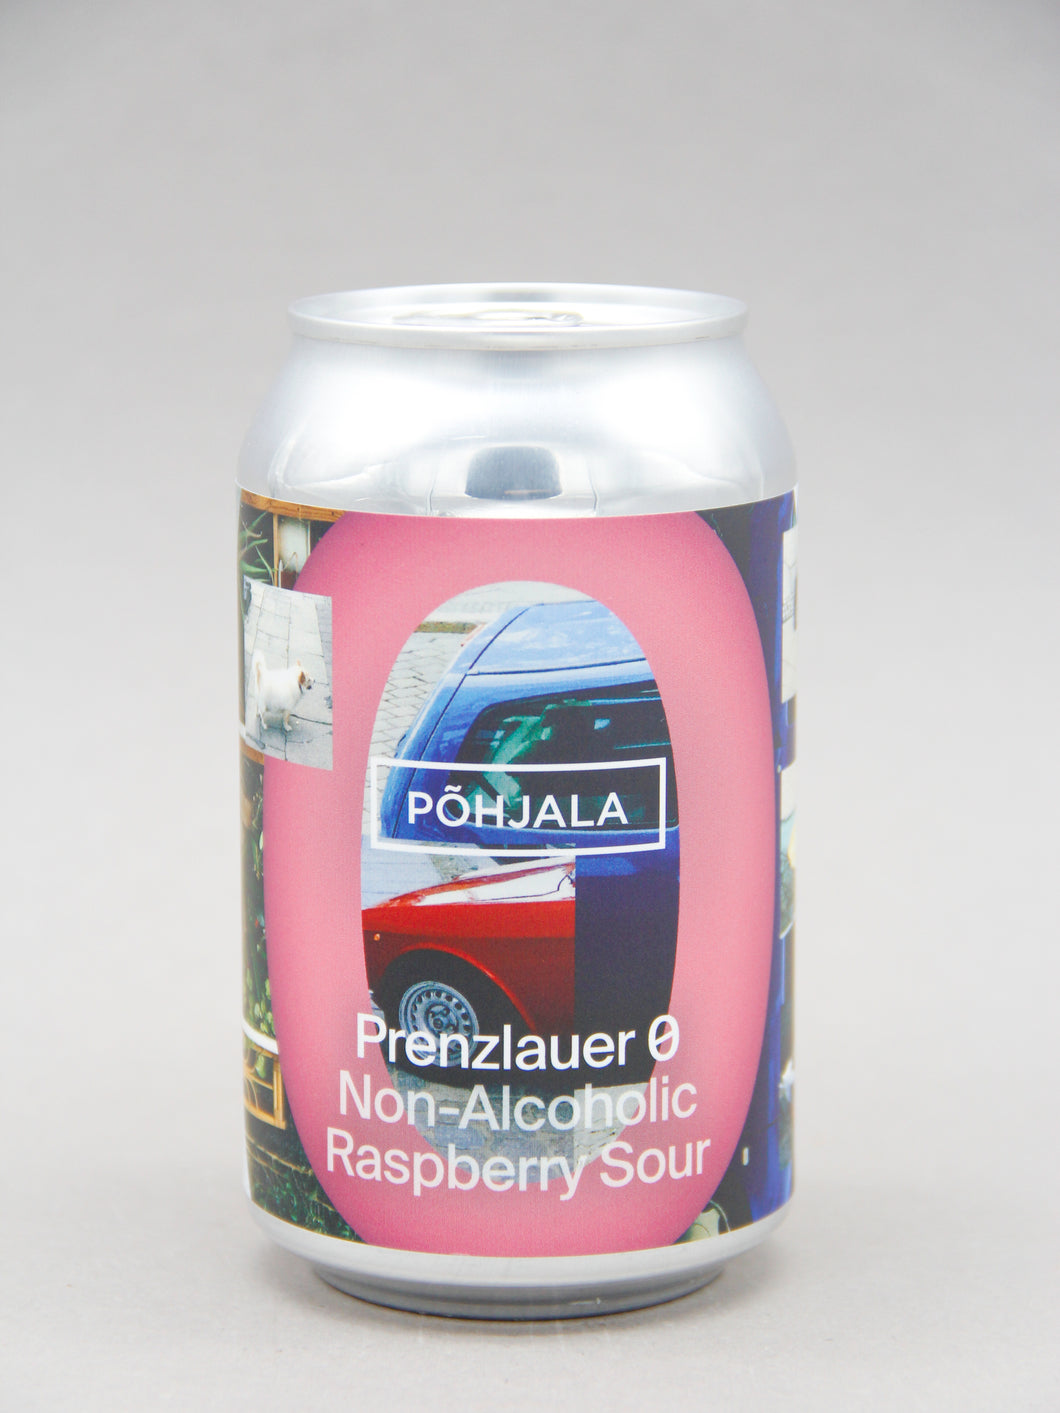 Põhjala: Prenzlauer 0, Non-Alcoholic Raspberry Sour (0.5%, 33cl CAN)